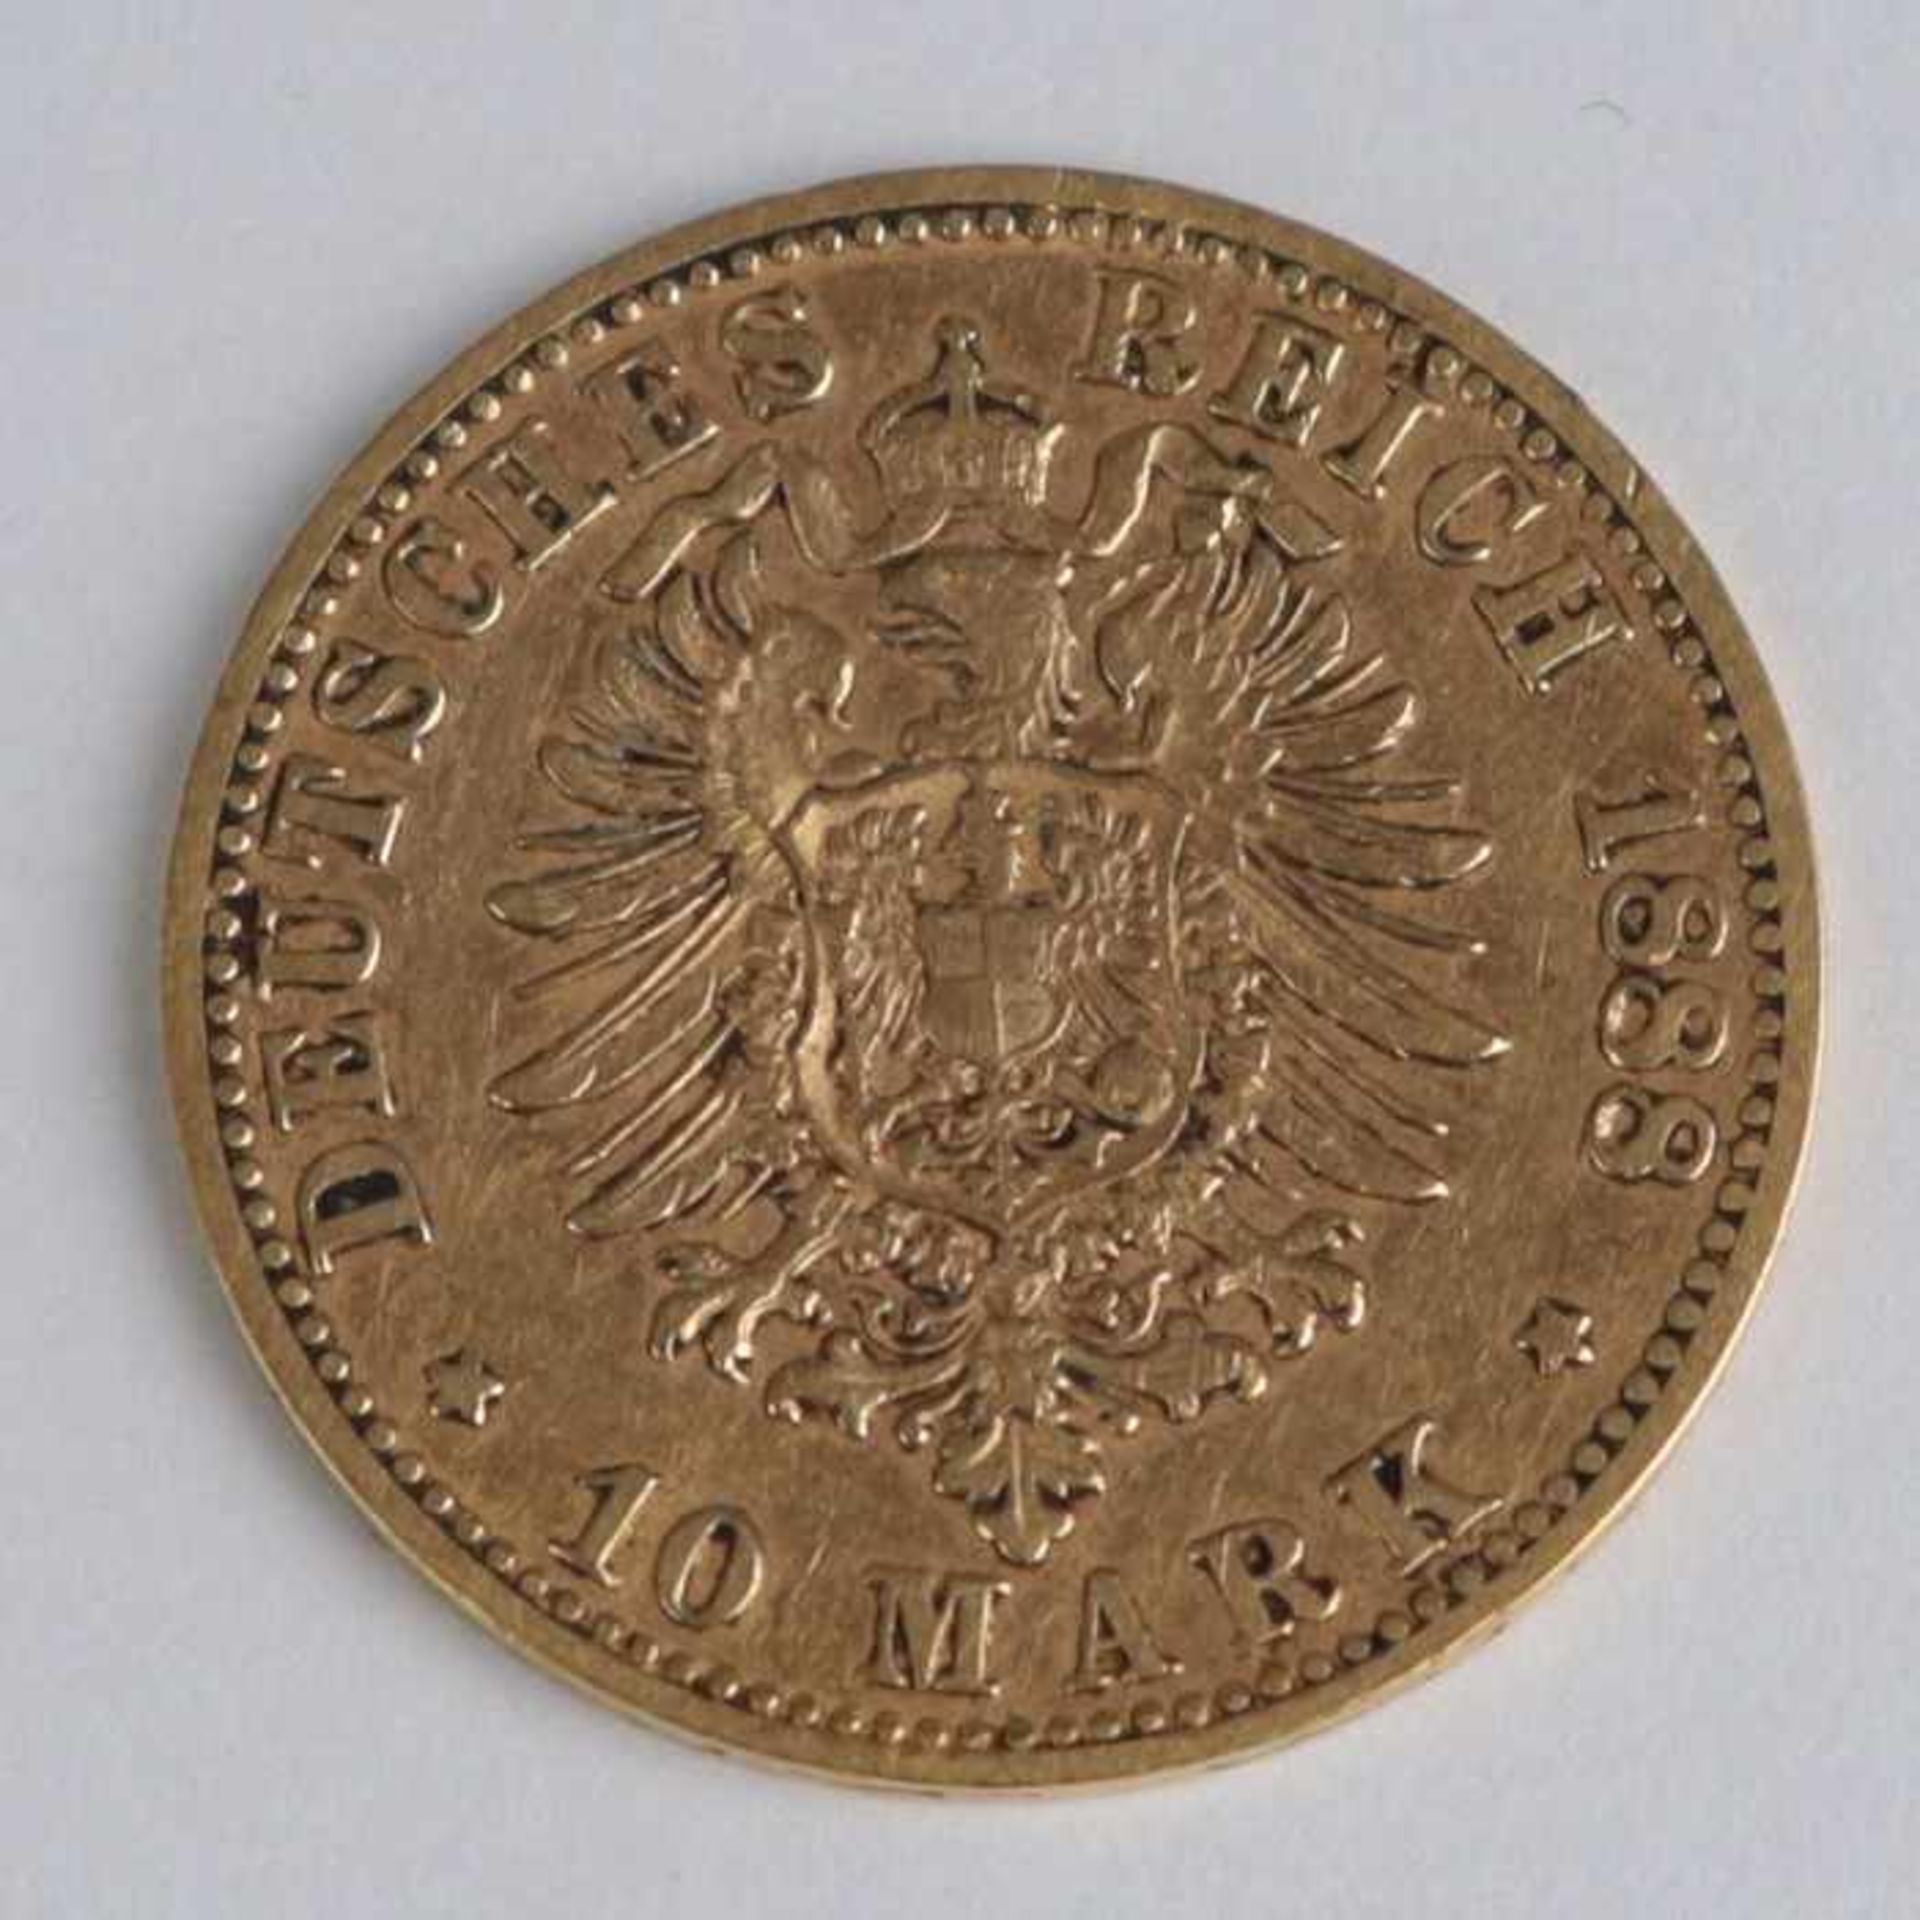 Goldmünze Bayern - 10 MarkOtto Koenig von Bayern, Deutsches Reich, 1888/D, G 3,93 g, ss- - -20. - Bild 2 aus 2